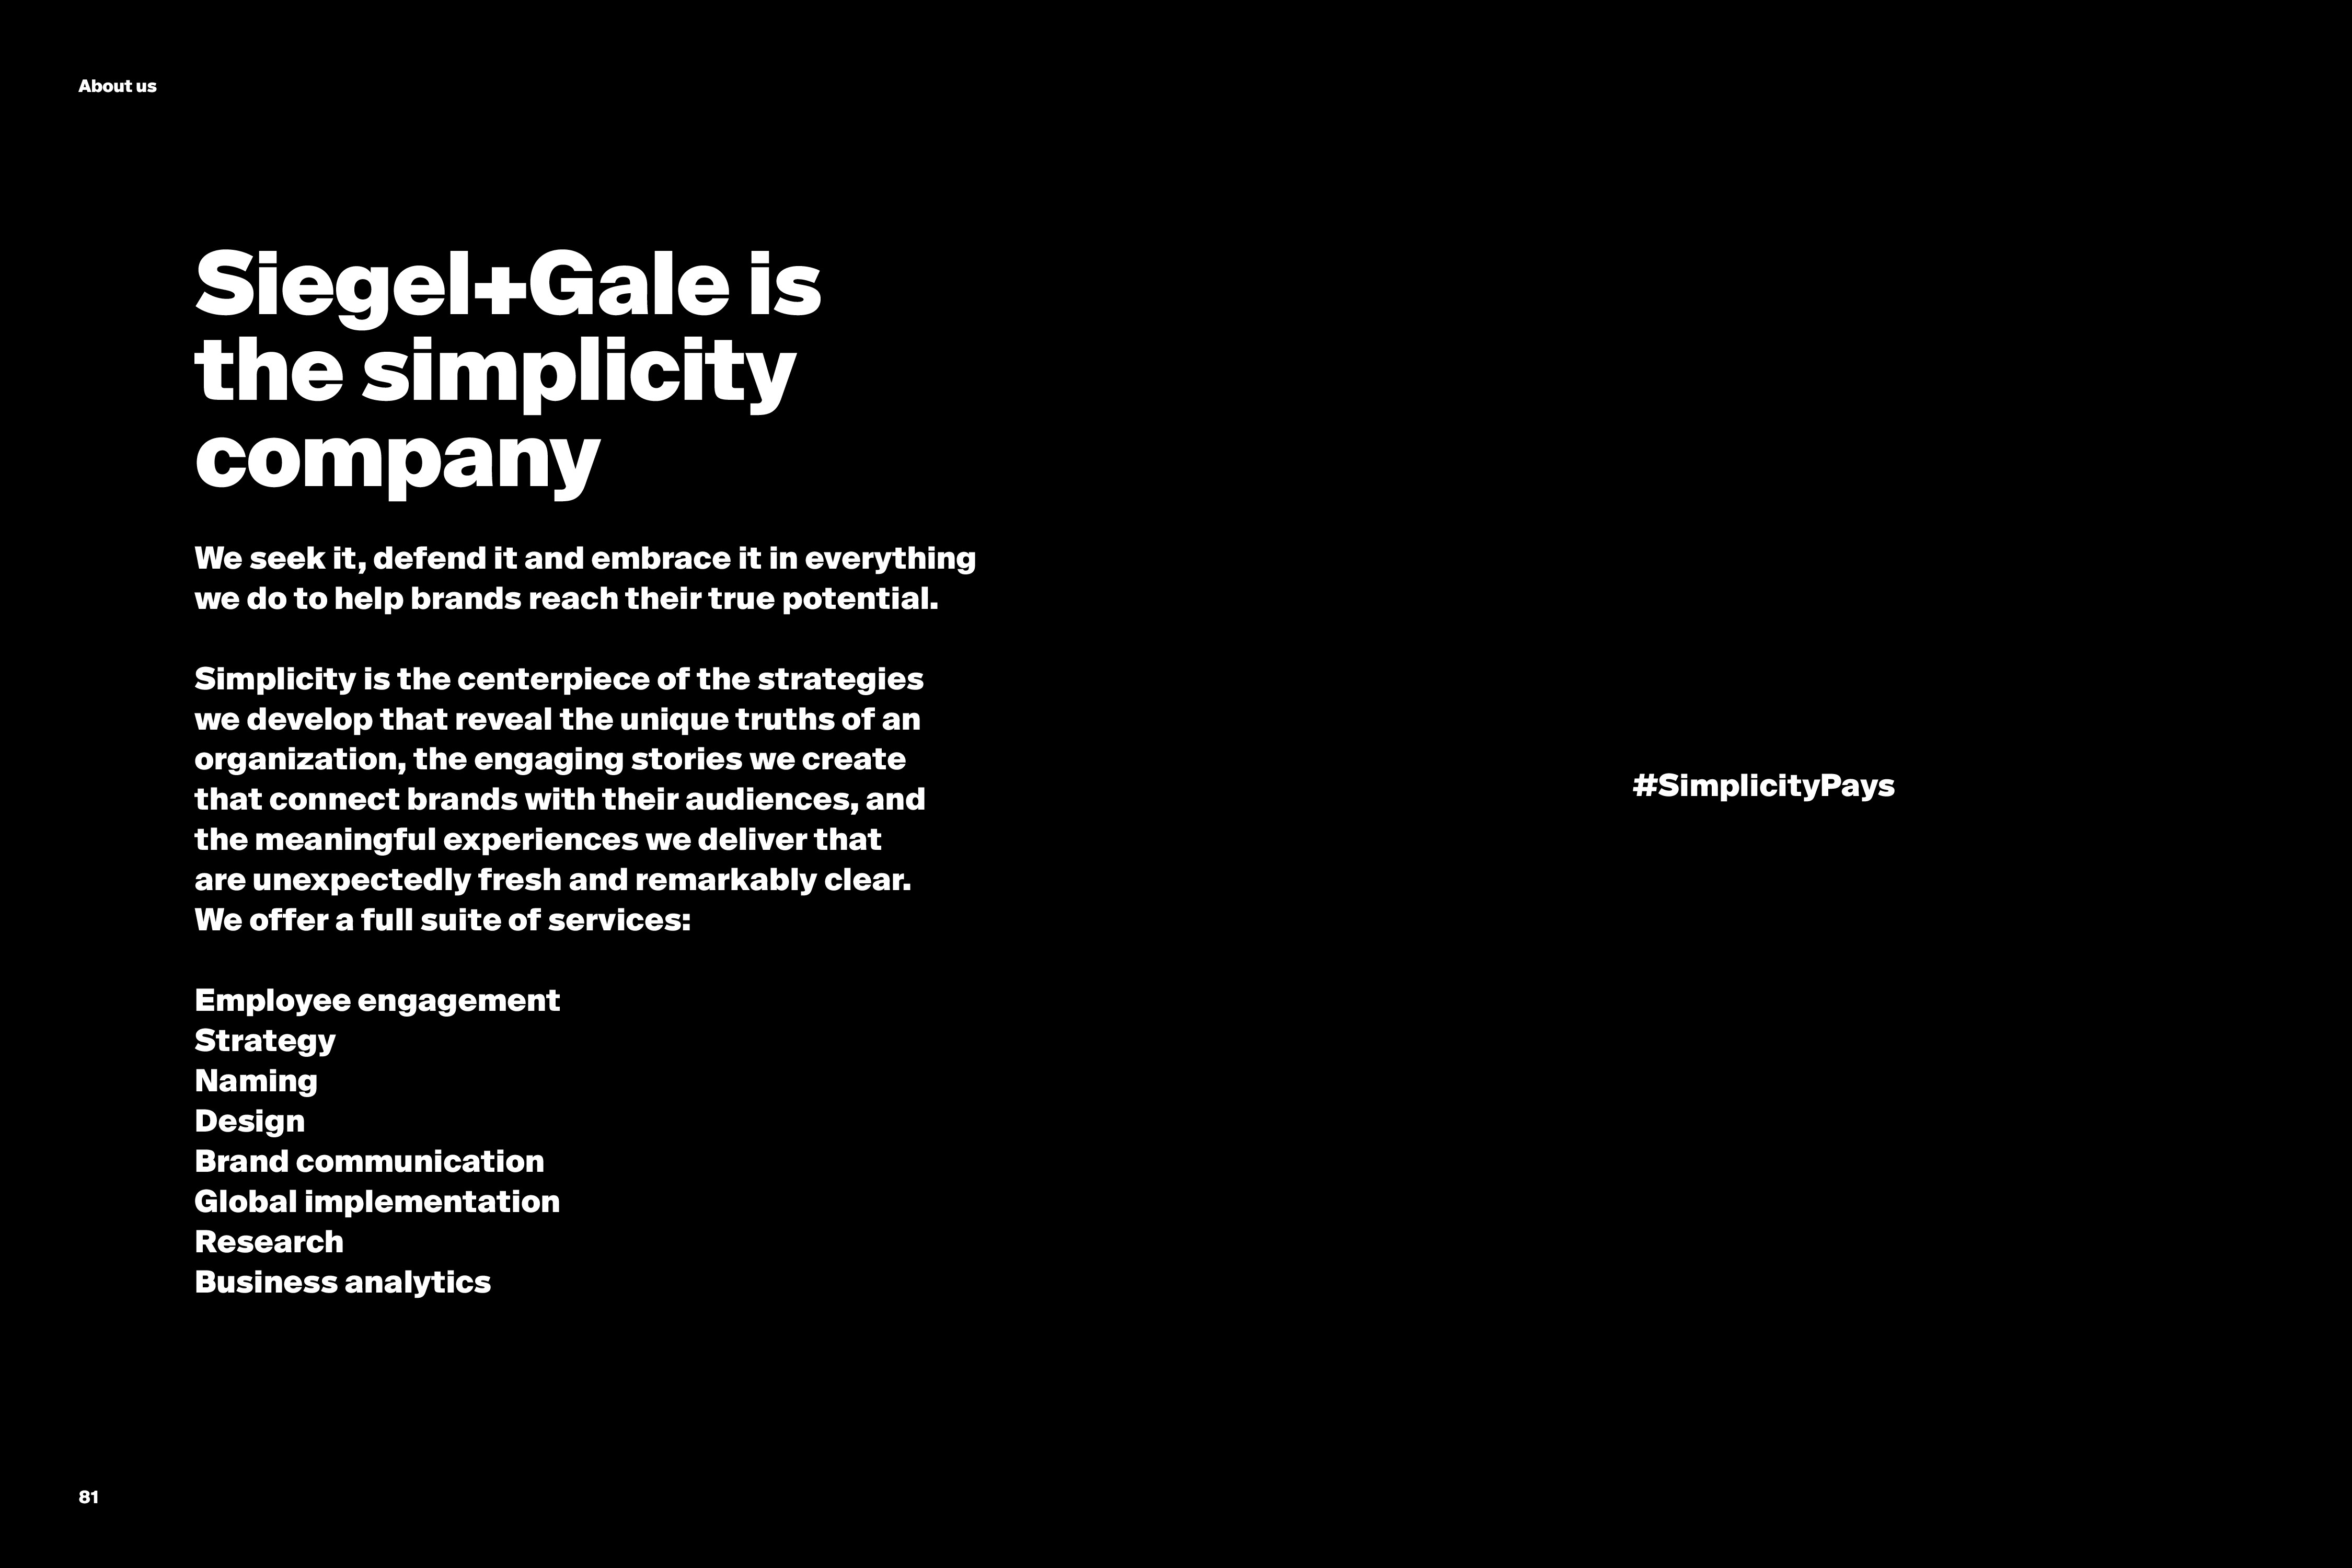 Siegel + Gale：2018年全球简单化品牌排行榜报告